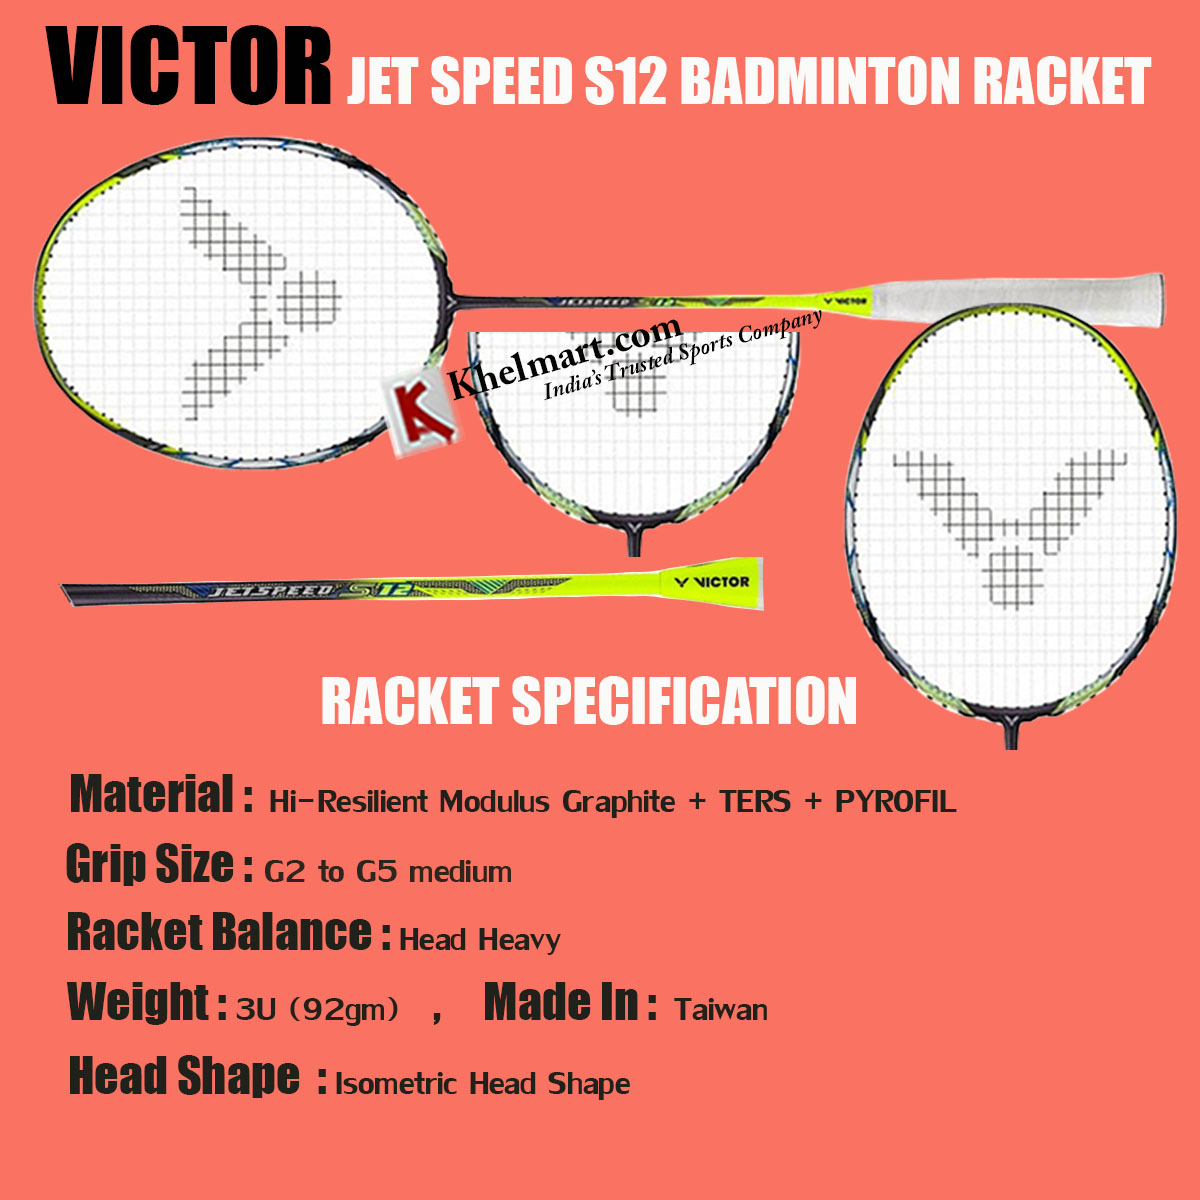 VICTOR_JET_SPEED_S12_BADMINTON_RACKET.jpg